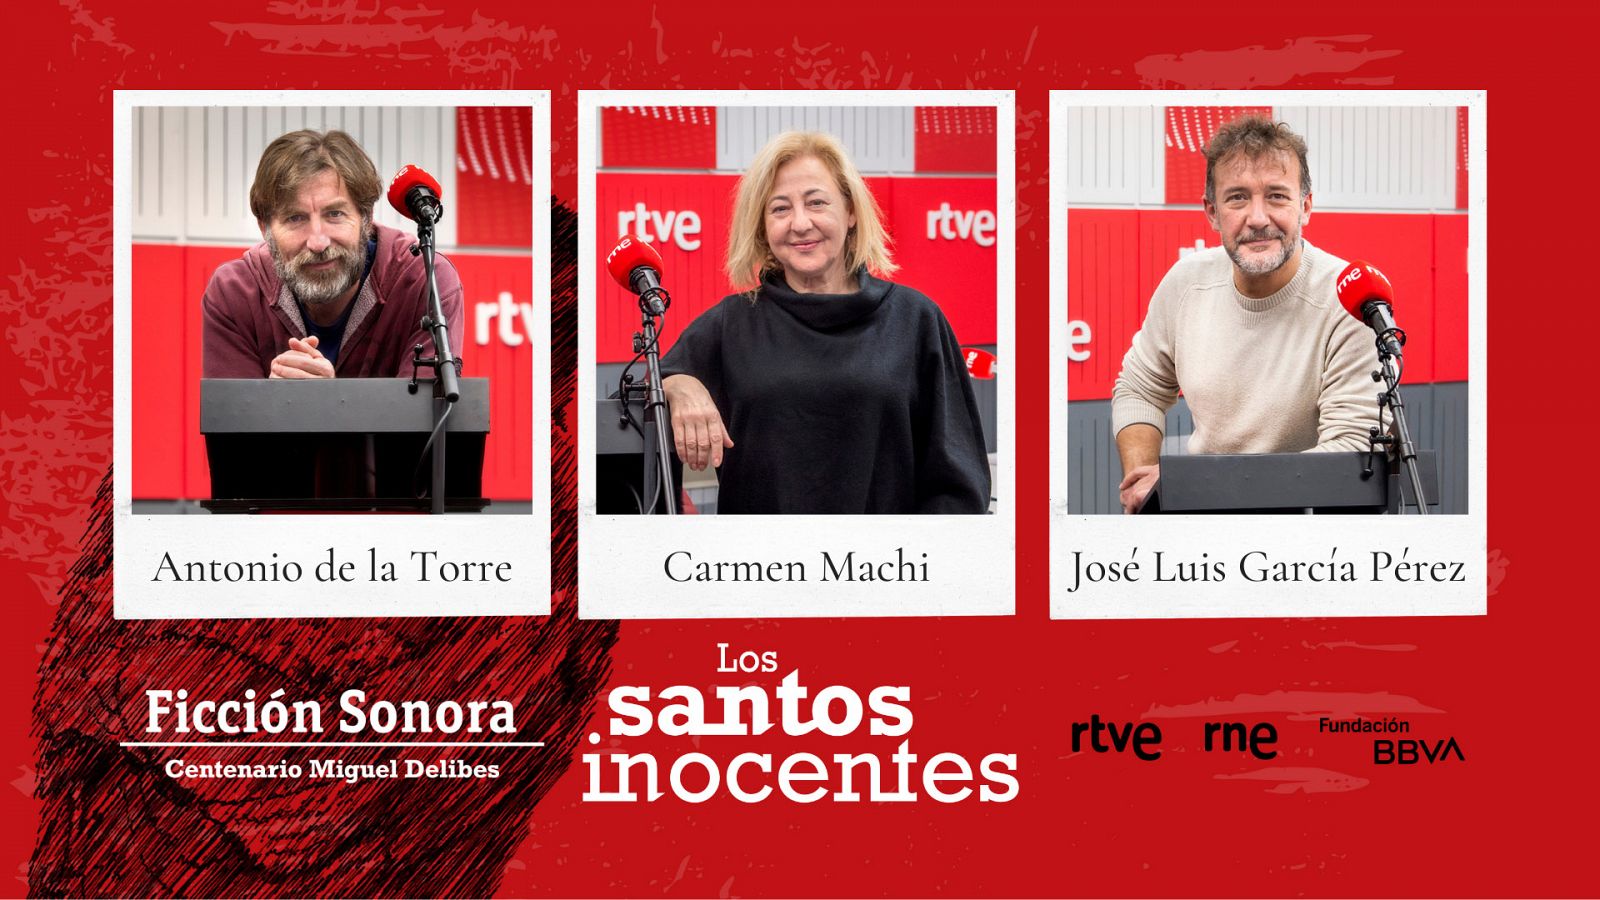  Antonio de la Torre, Carmen Machi y José Luis García Pérez, tres de las voces de la ficción sonora 'Los santos inocentes'